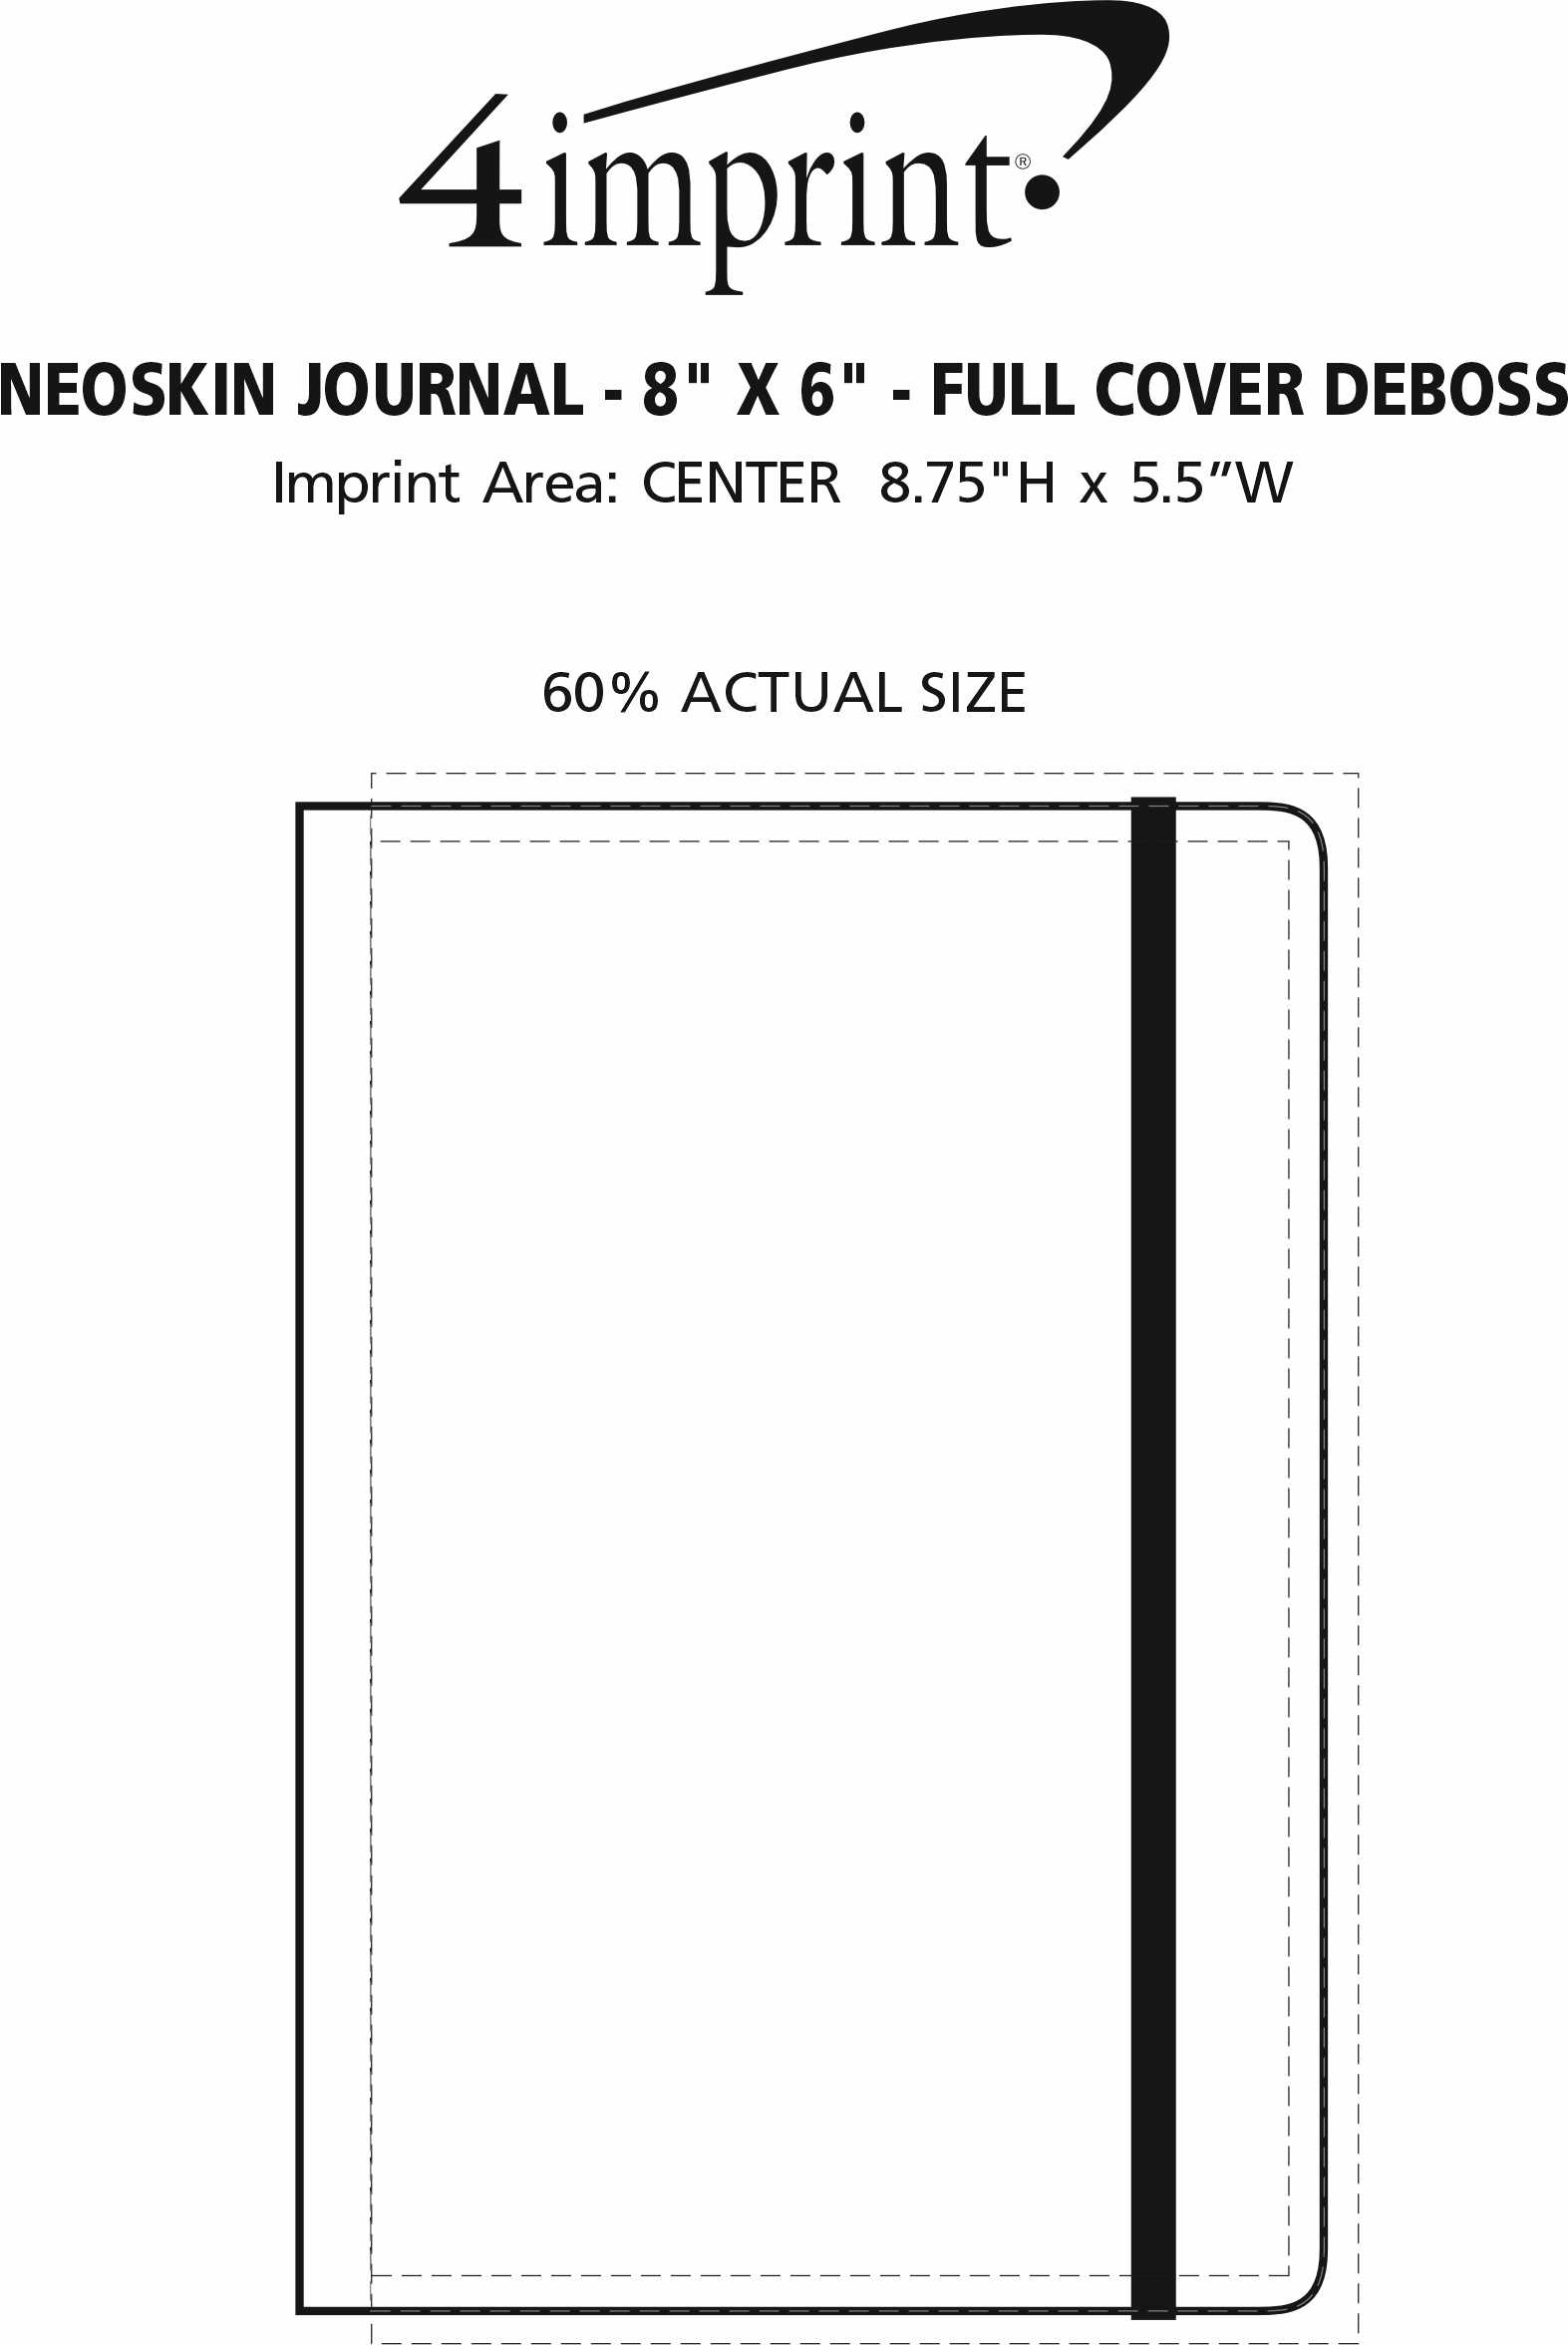 Imprint Area of Neoskin Journal - 8" x 6" - Full Cover Deboss